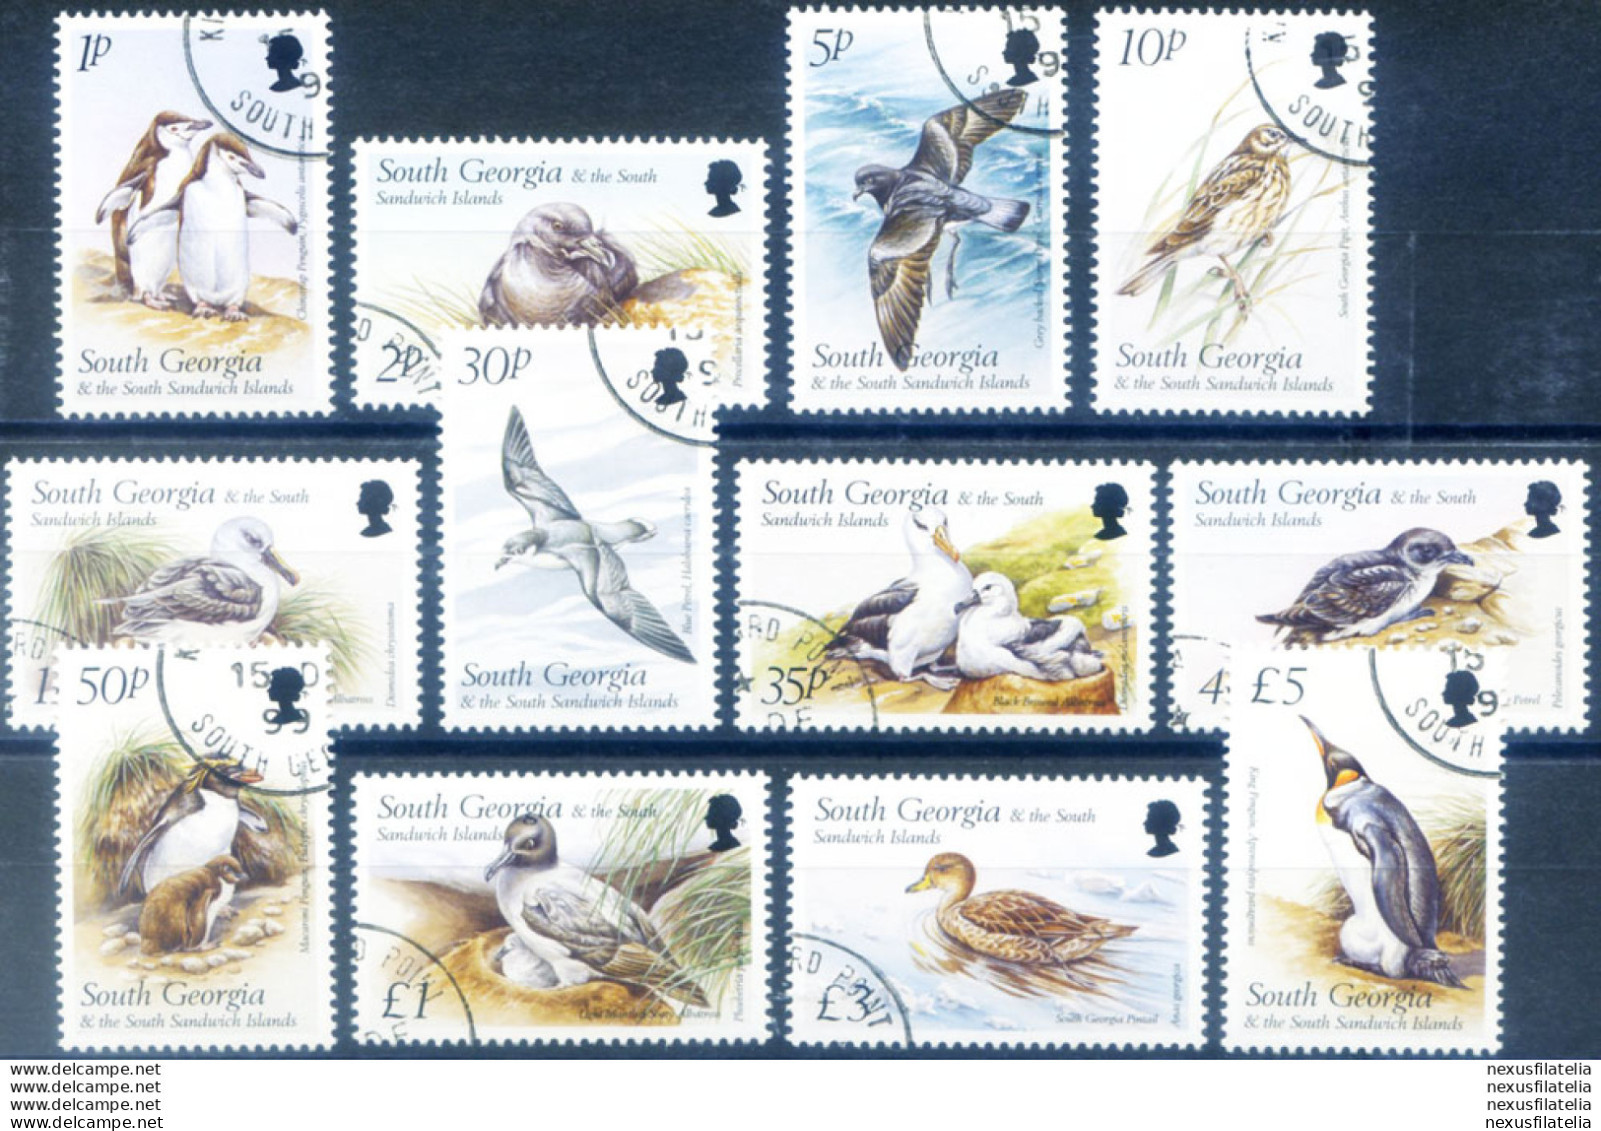 South Georgia. Definitiva. Fauna. Uccelli 1999. Usati. - Falkland